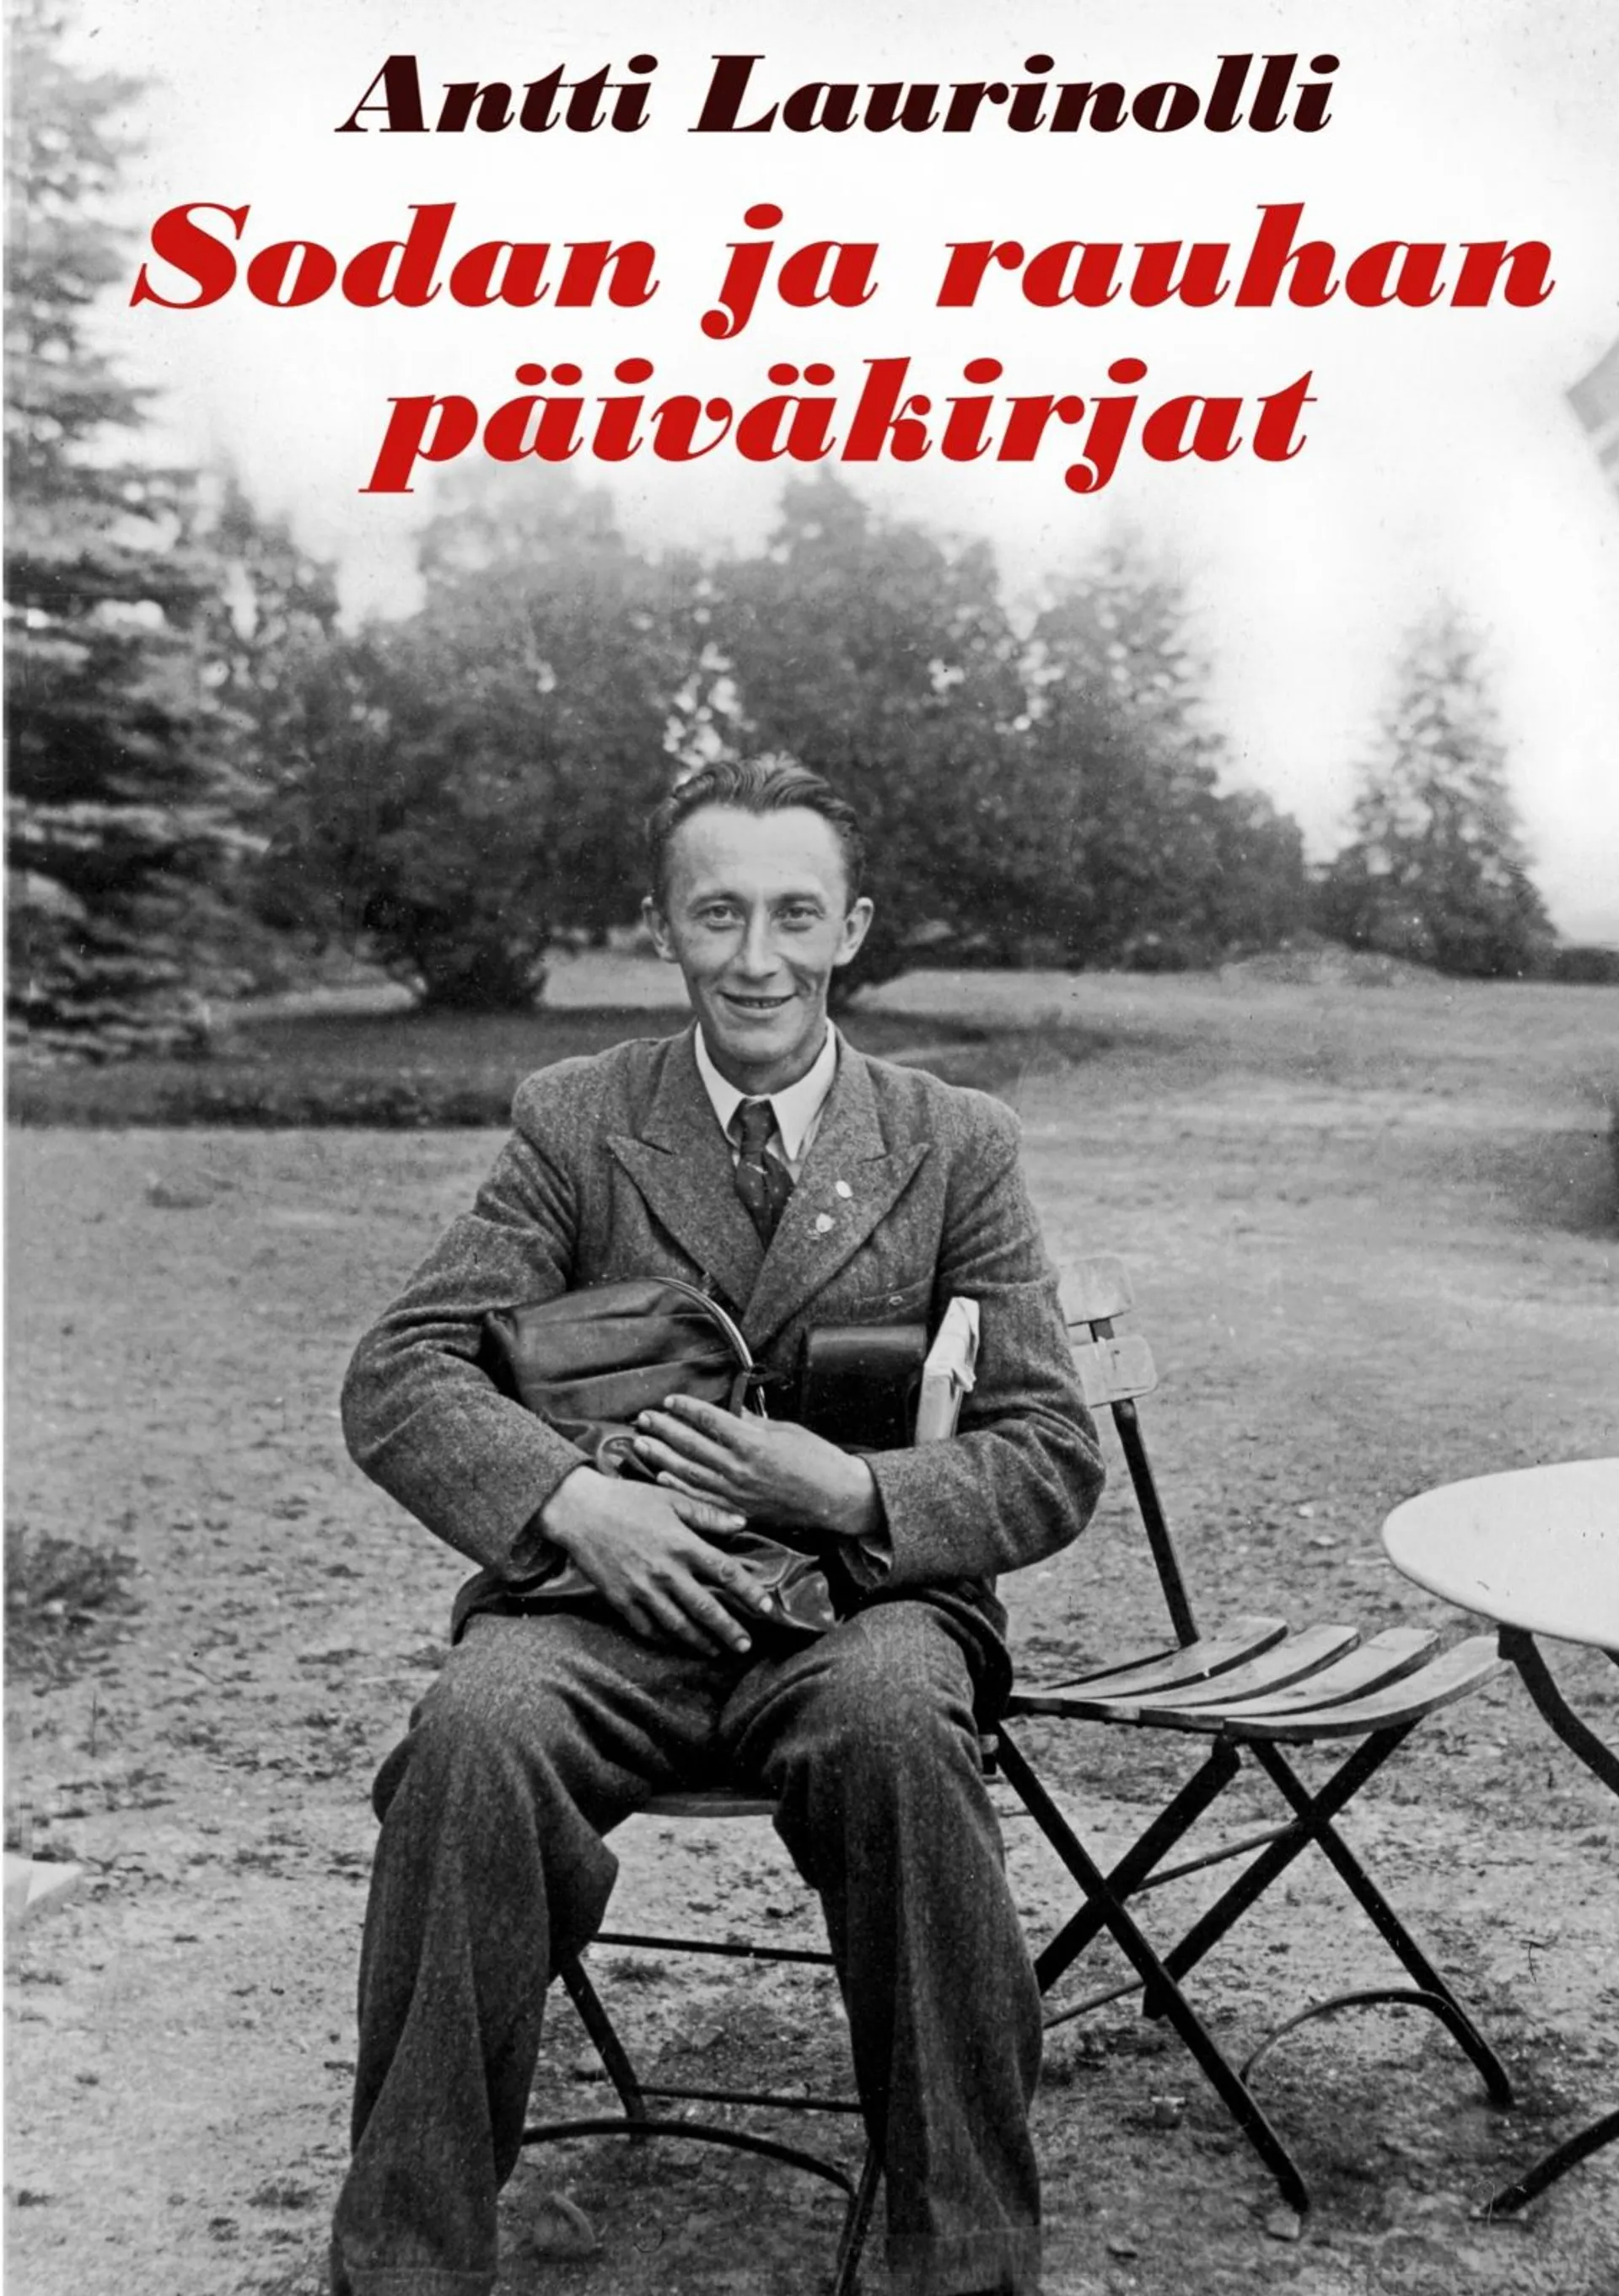 Laurinolli, Sodan ja rauhan päiväkirjat - Kirjeenvaihtoa ja kirjoituksia 1939-1950